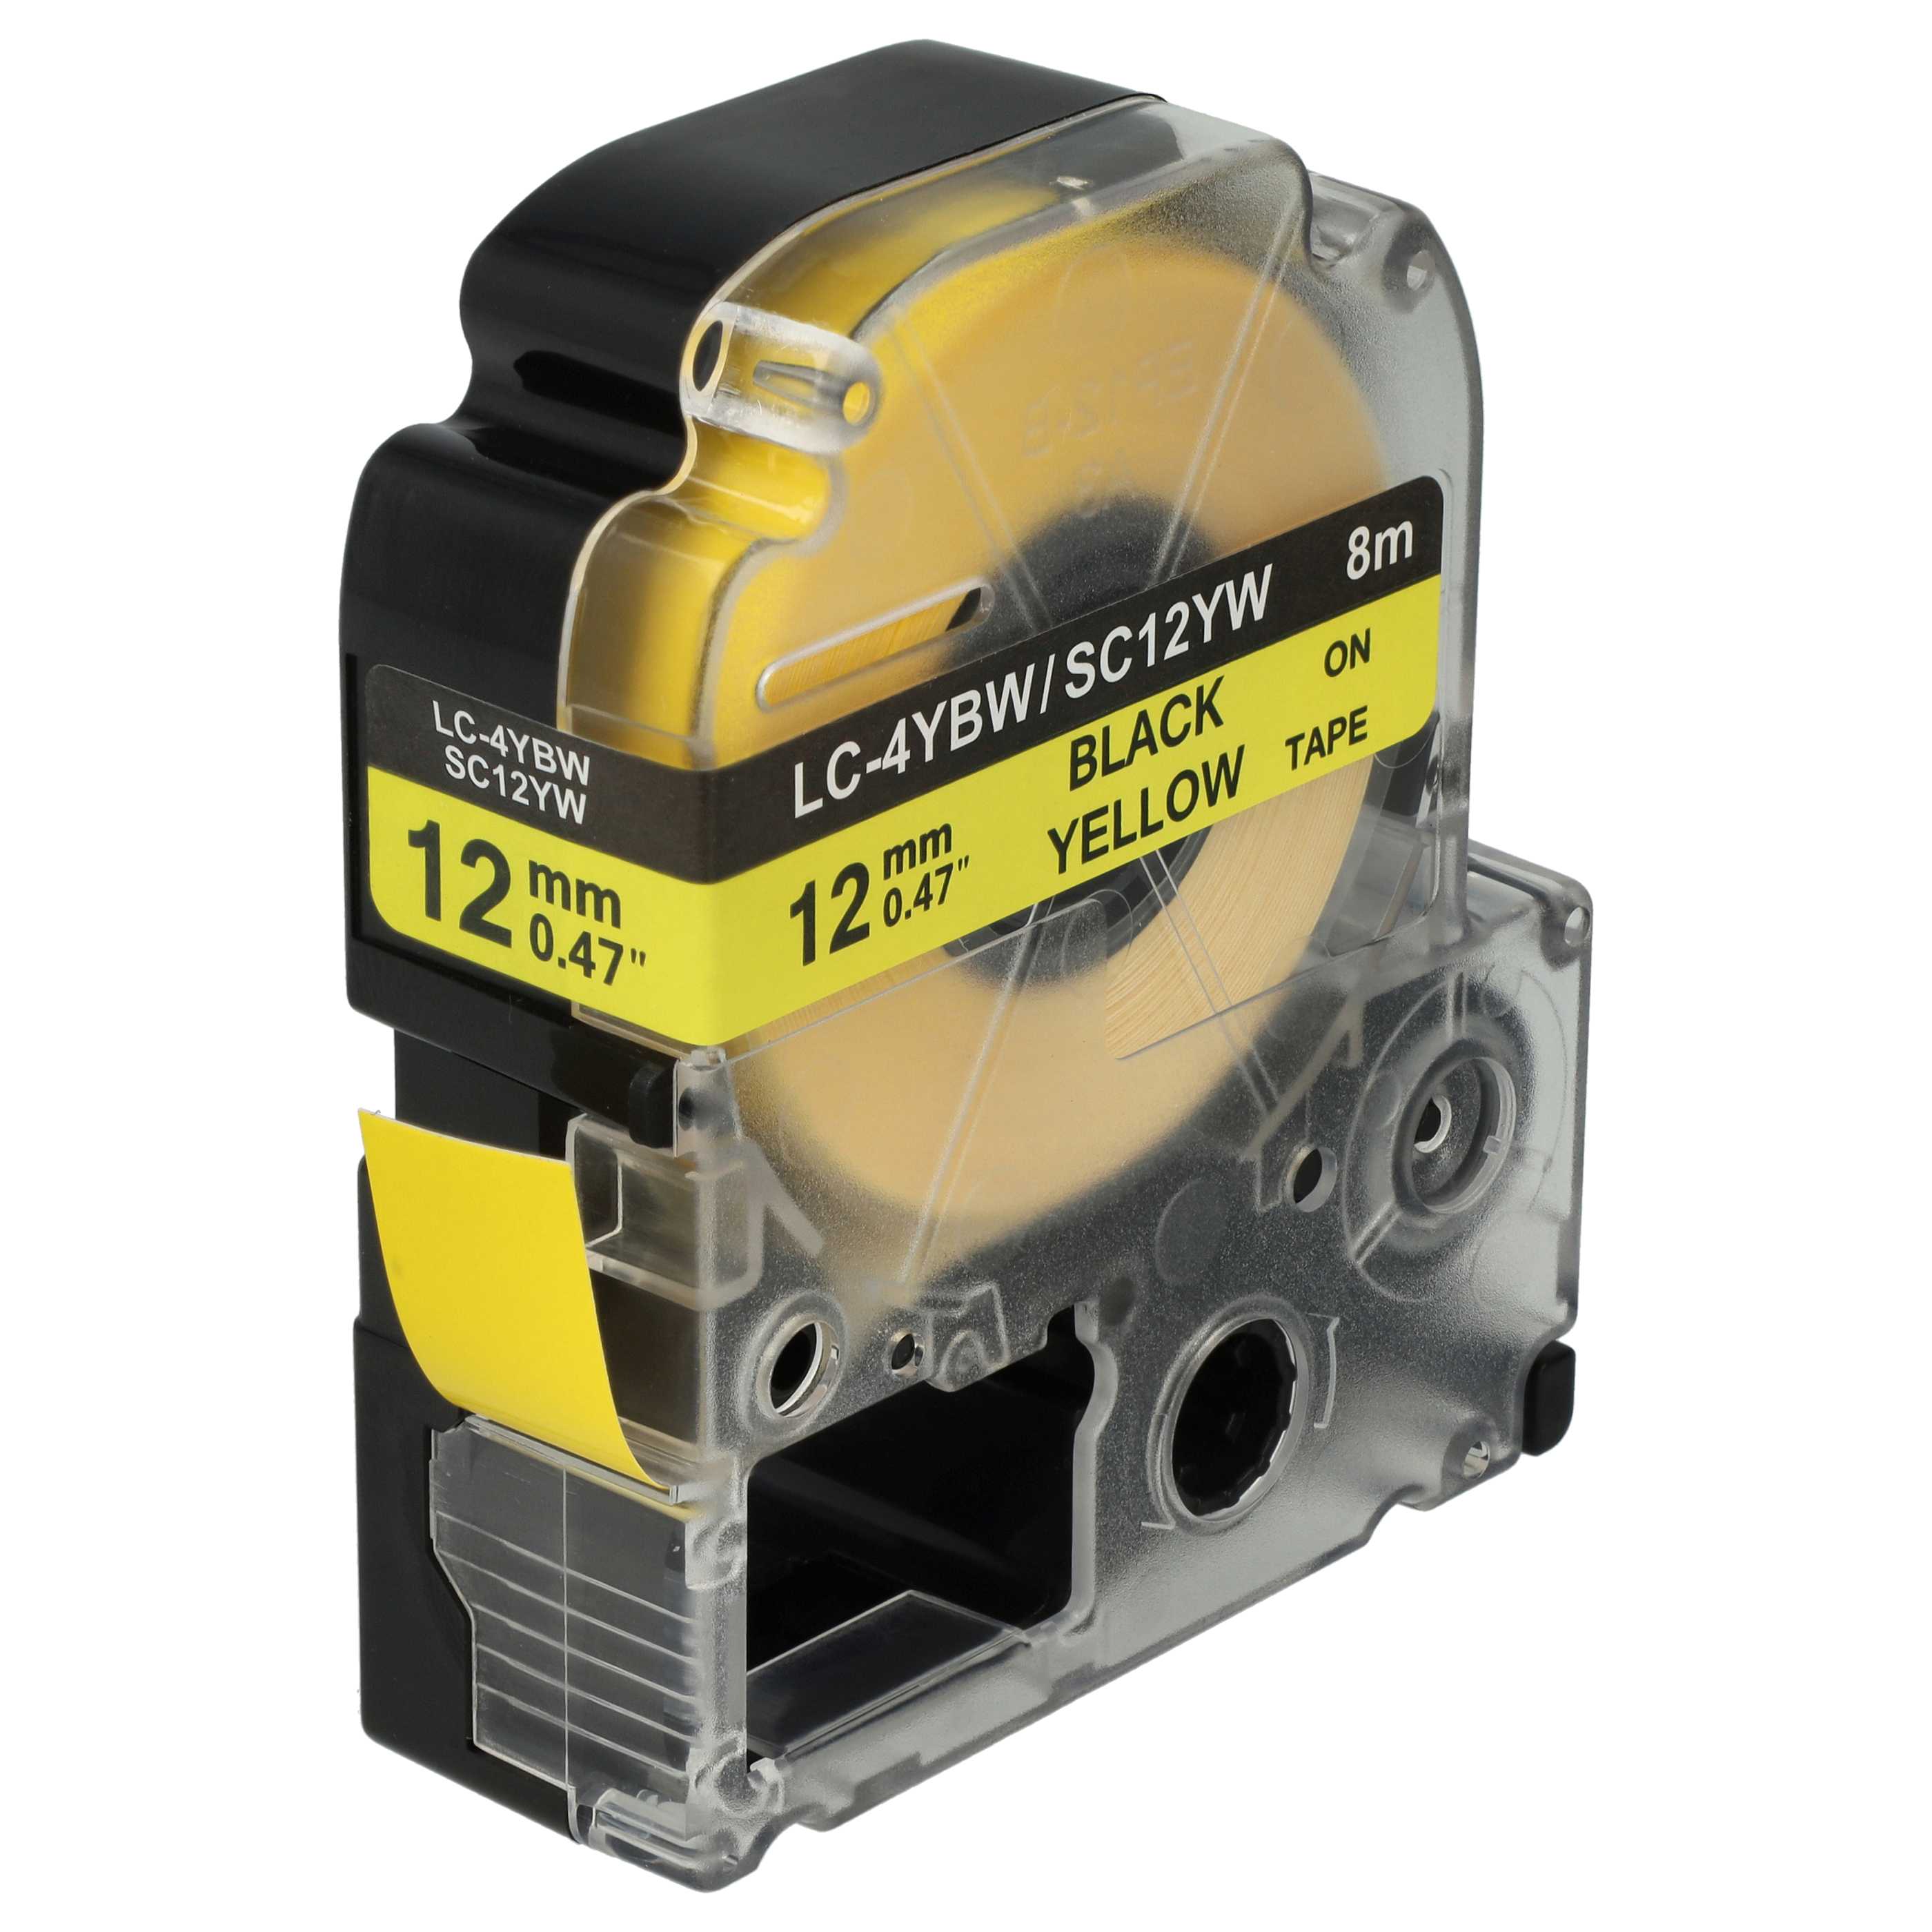 Cassetta nastro sostituisce Epson LC-4WBW per etichettatrice Epson 12mm nero su giallo